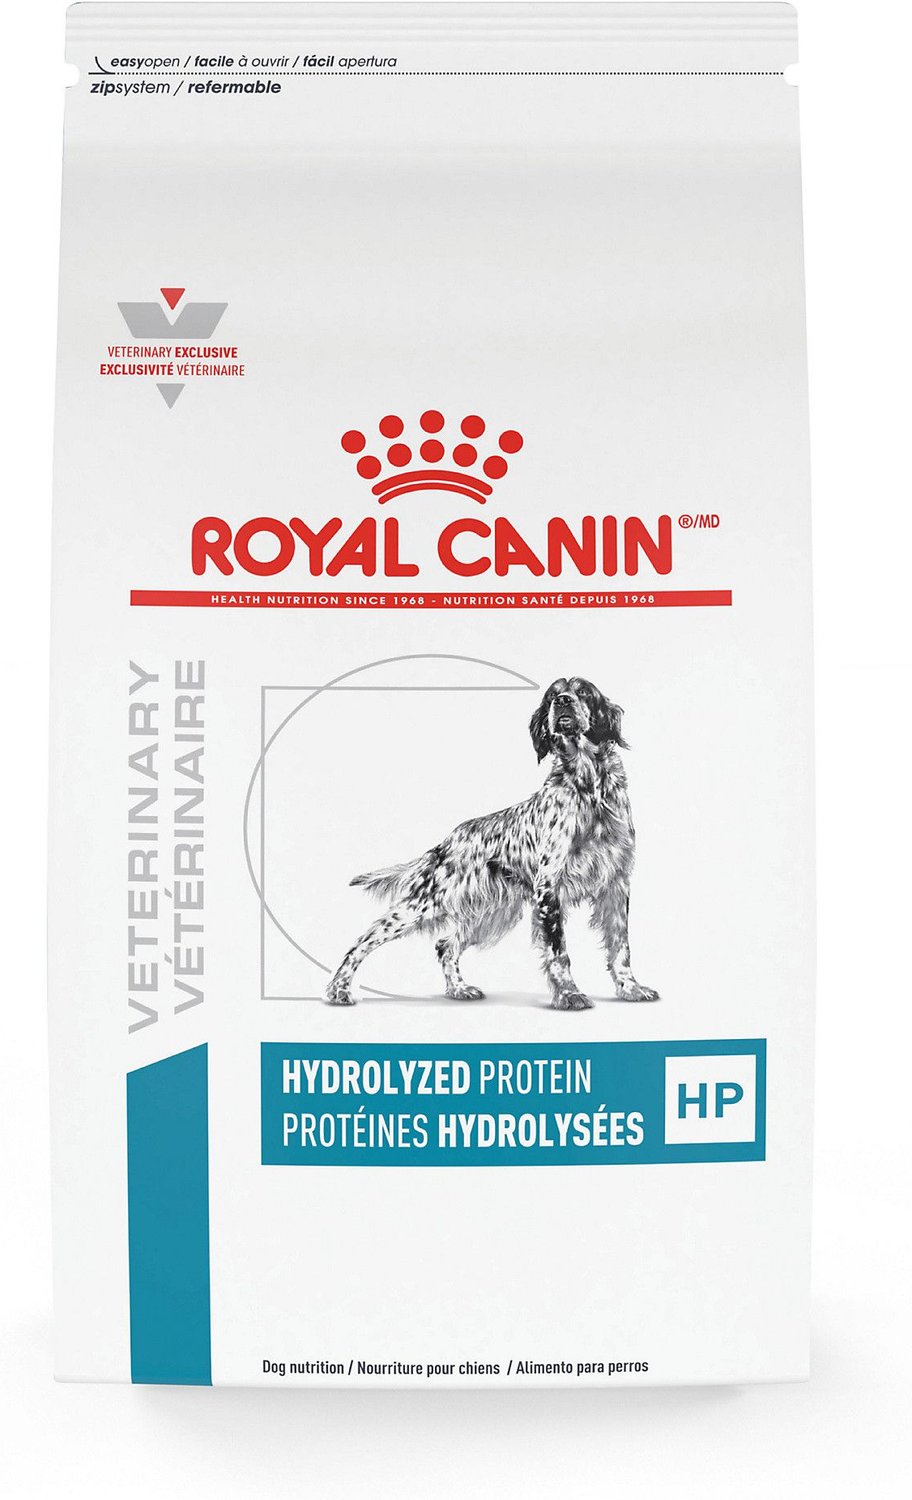 royal canin hydrolyzed protein feeding guide